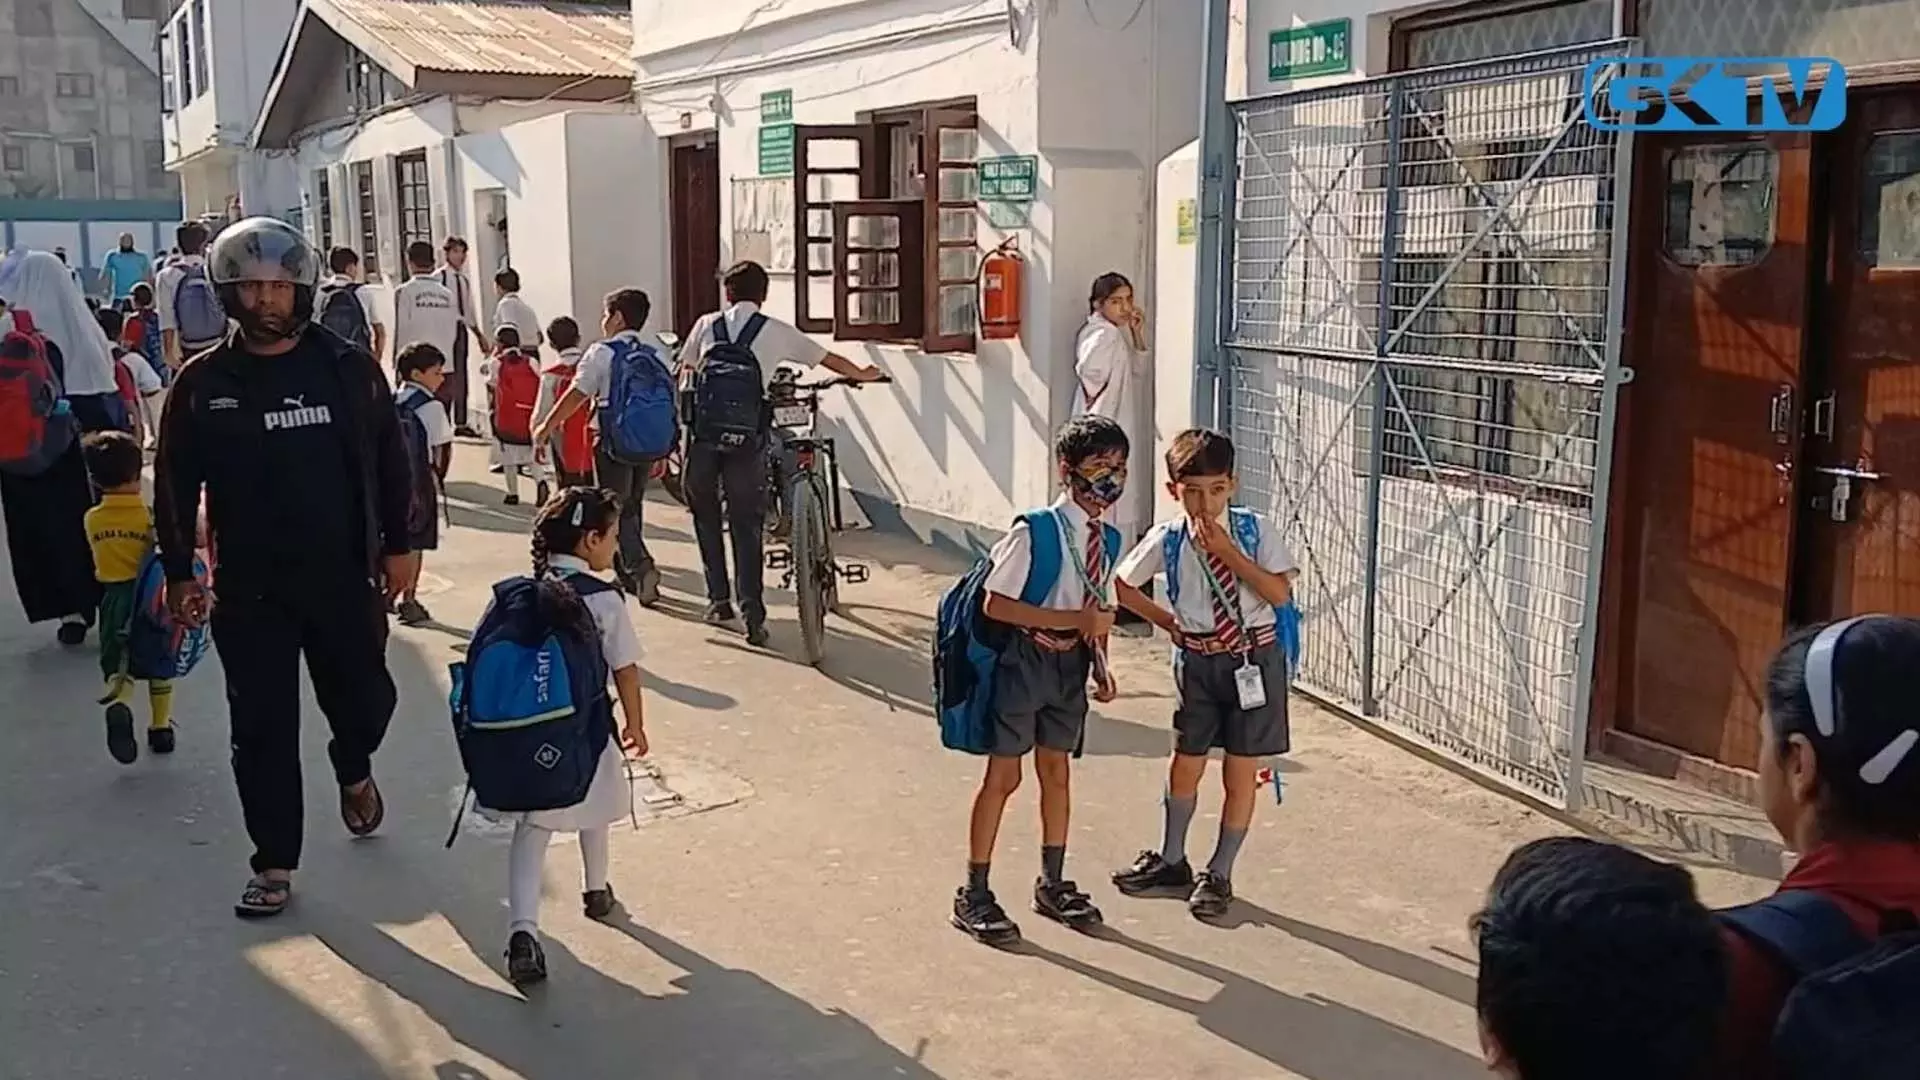 Srinagar स्कूलों में पंखे बंद खेल रद्द होने से छात्र परेशान, अभिभावक परेशान